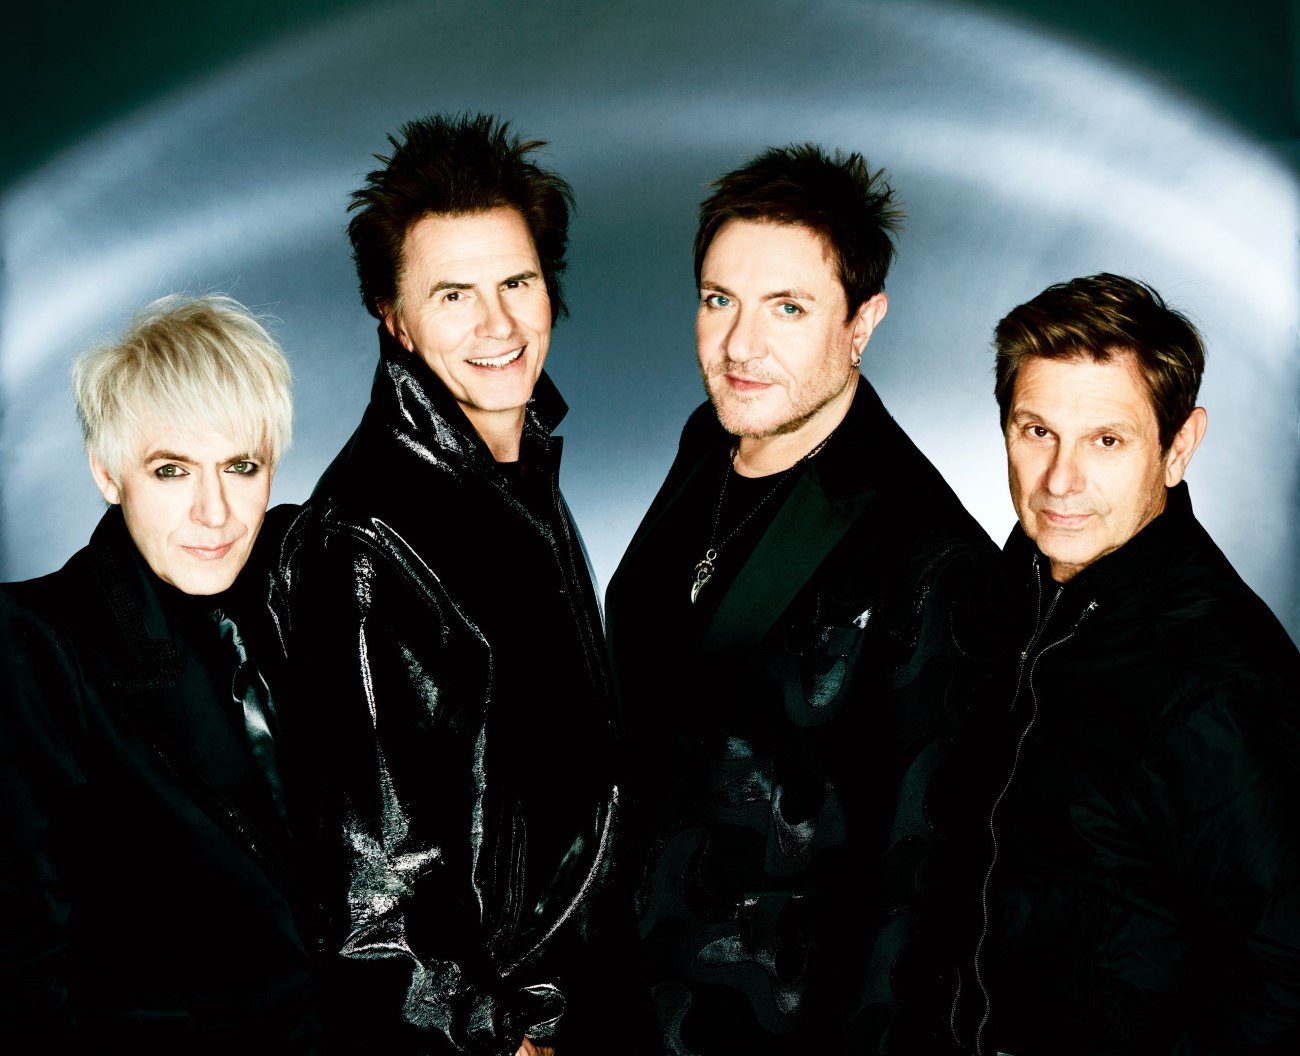 Duran Duran - Album Future Past